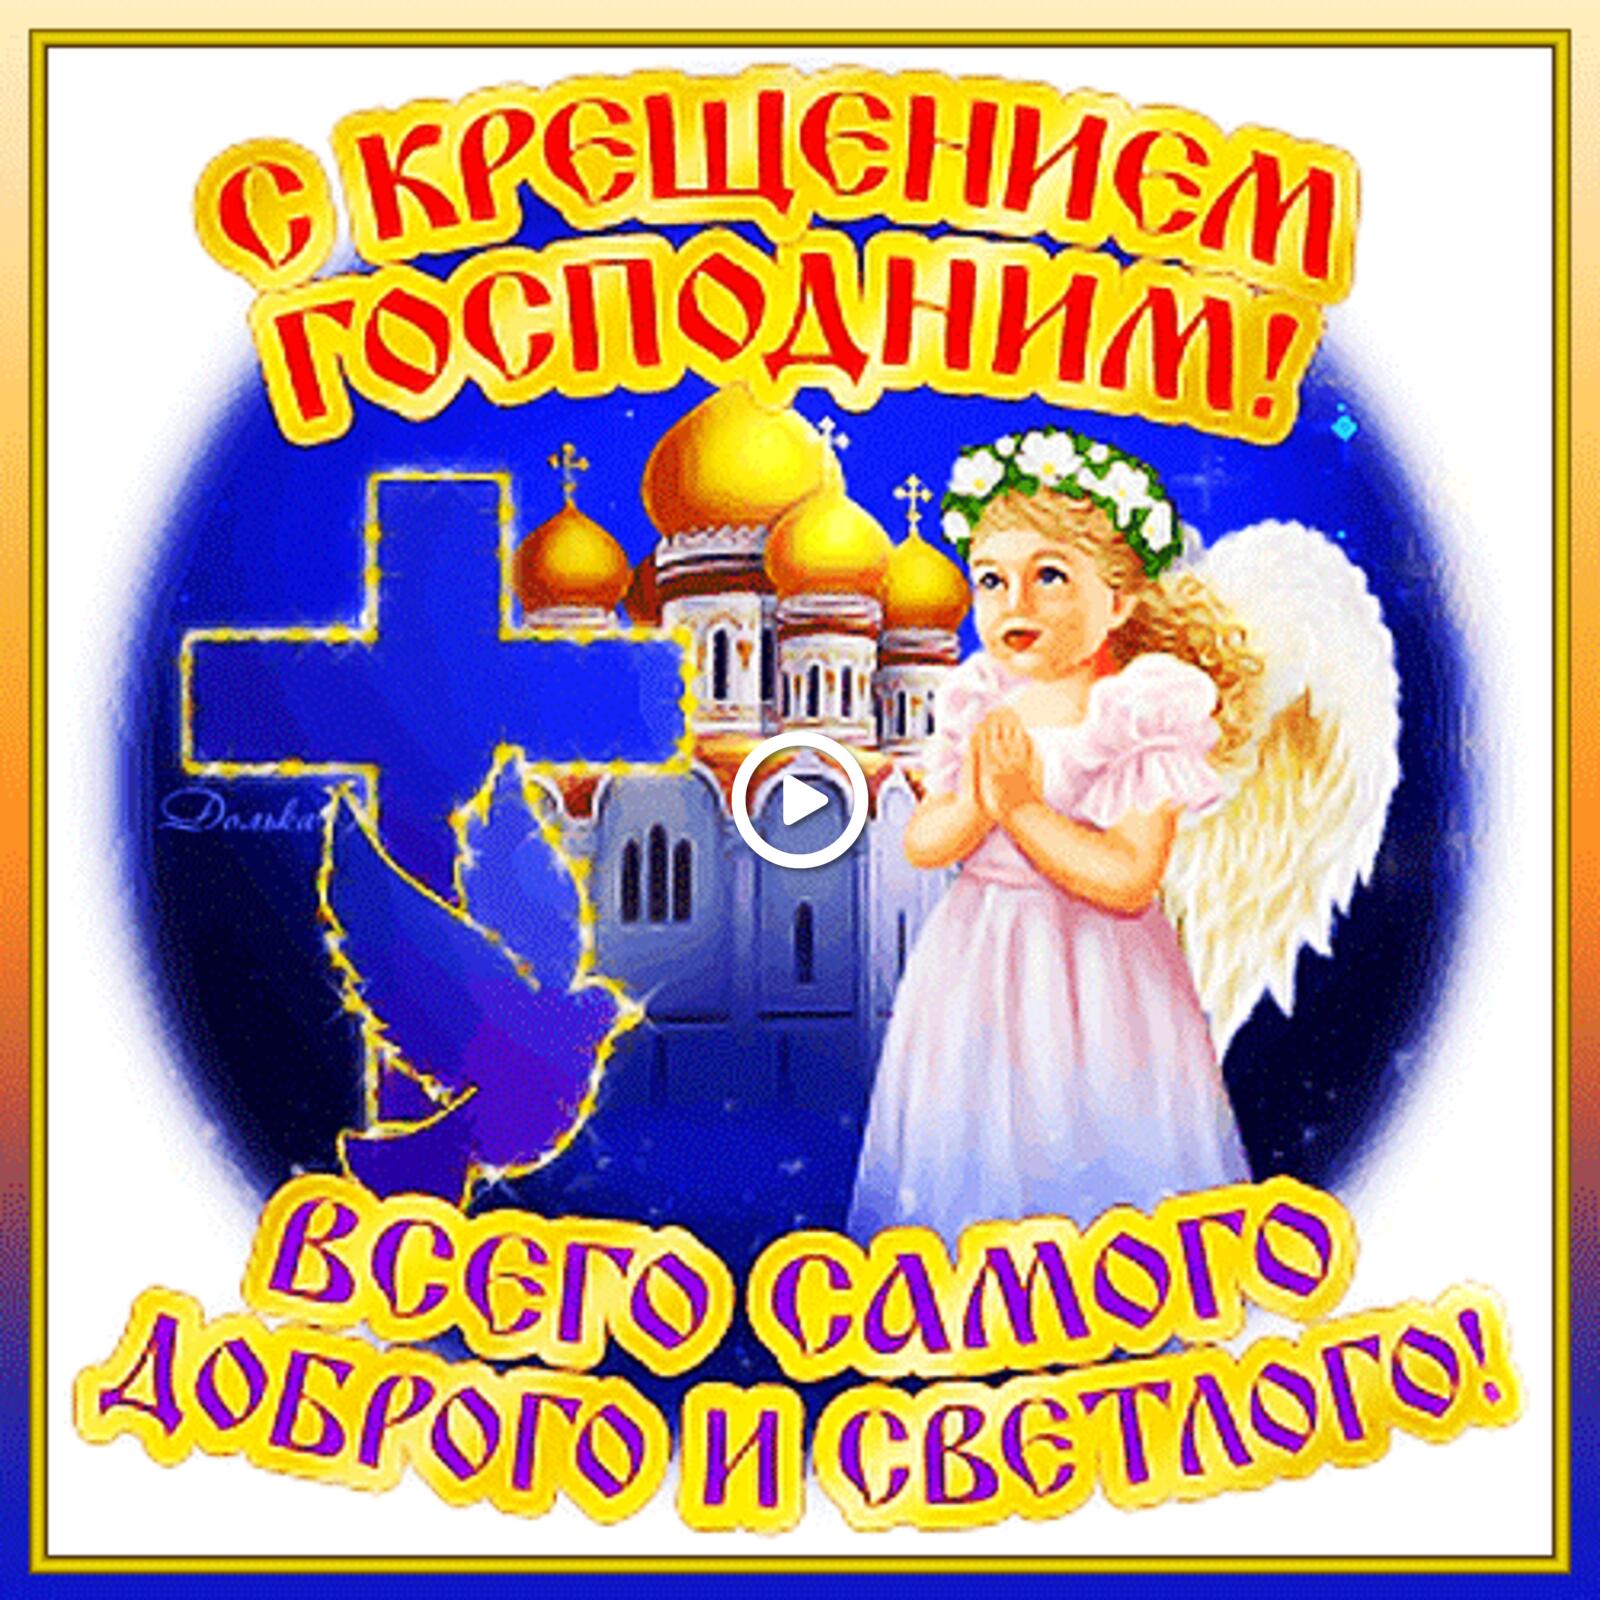 一张以快乐的主的洗礼 节日 天使为主题的明信片